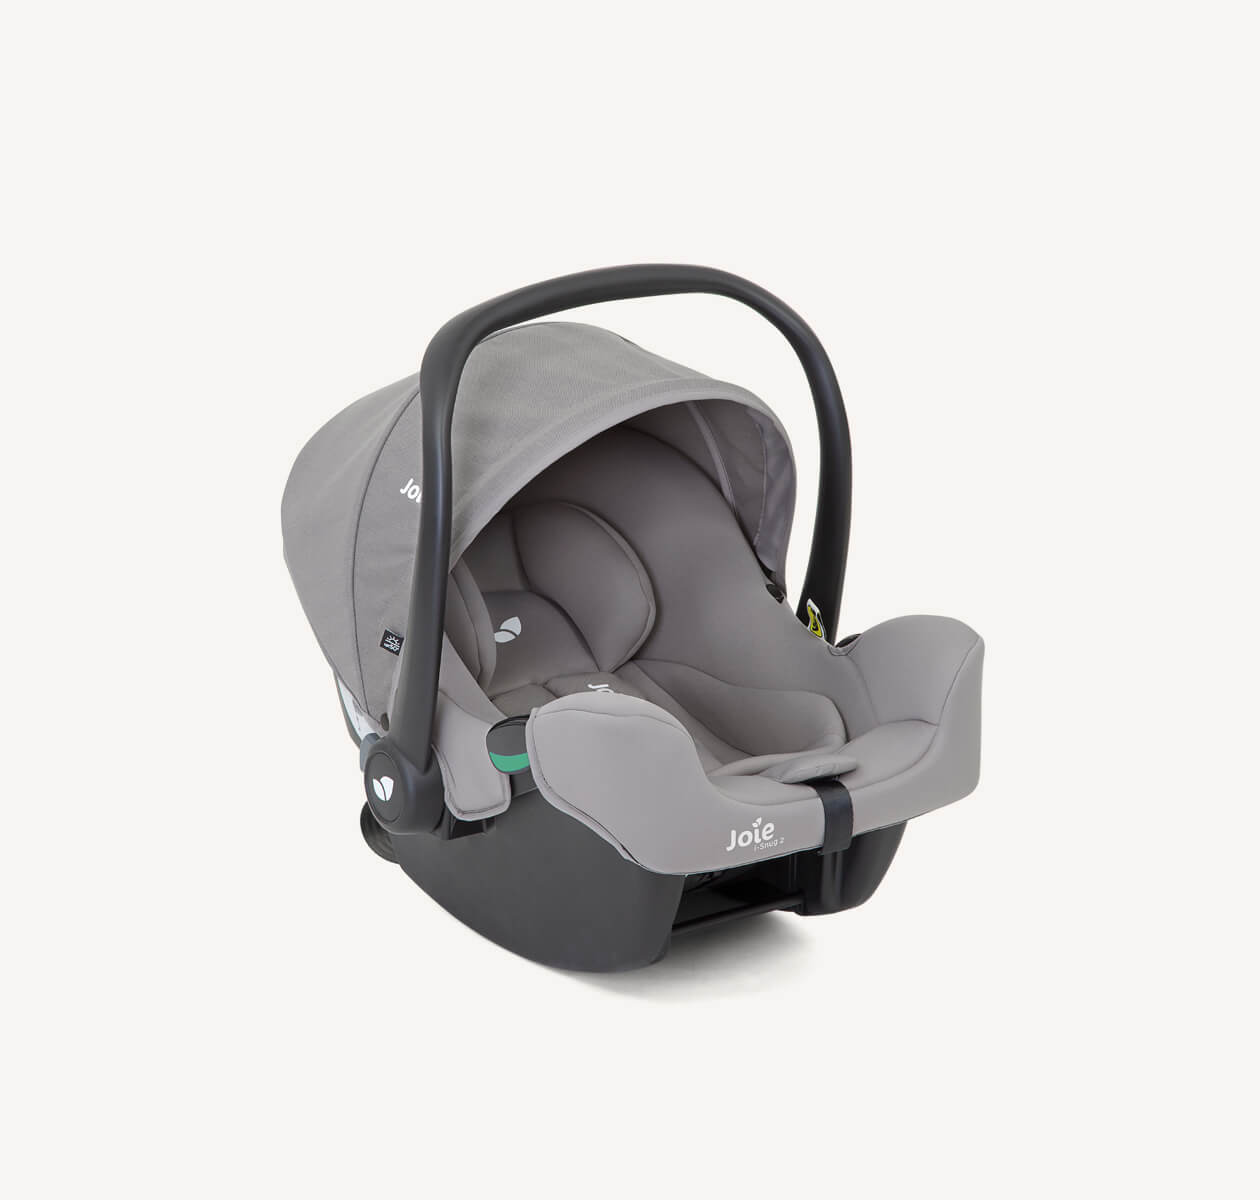 Siège-auto pour bébé Joie I-snug 2, coloris gris, avec pare-soleil et poignée relevés en position à angle droit.